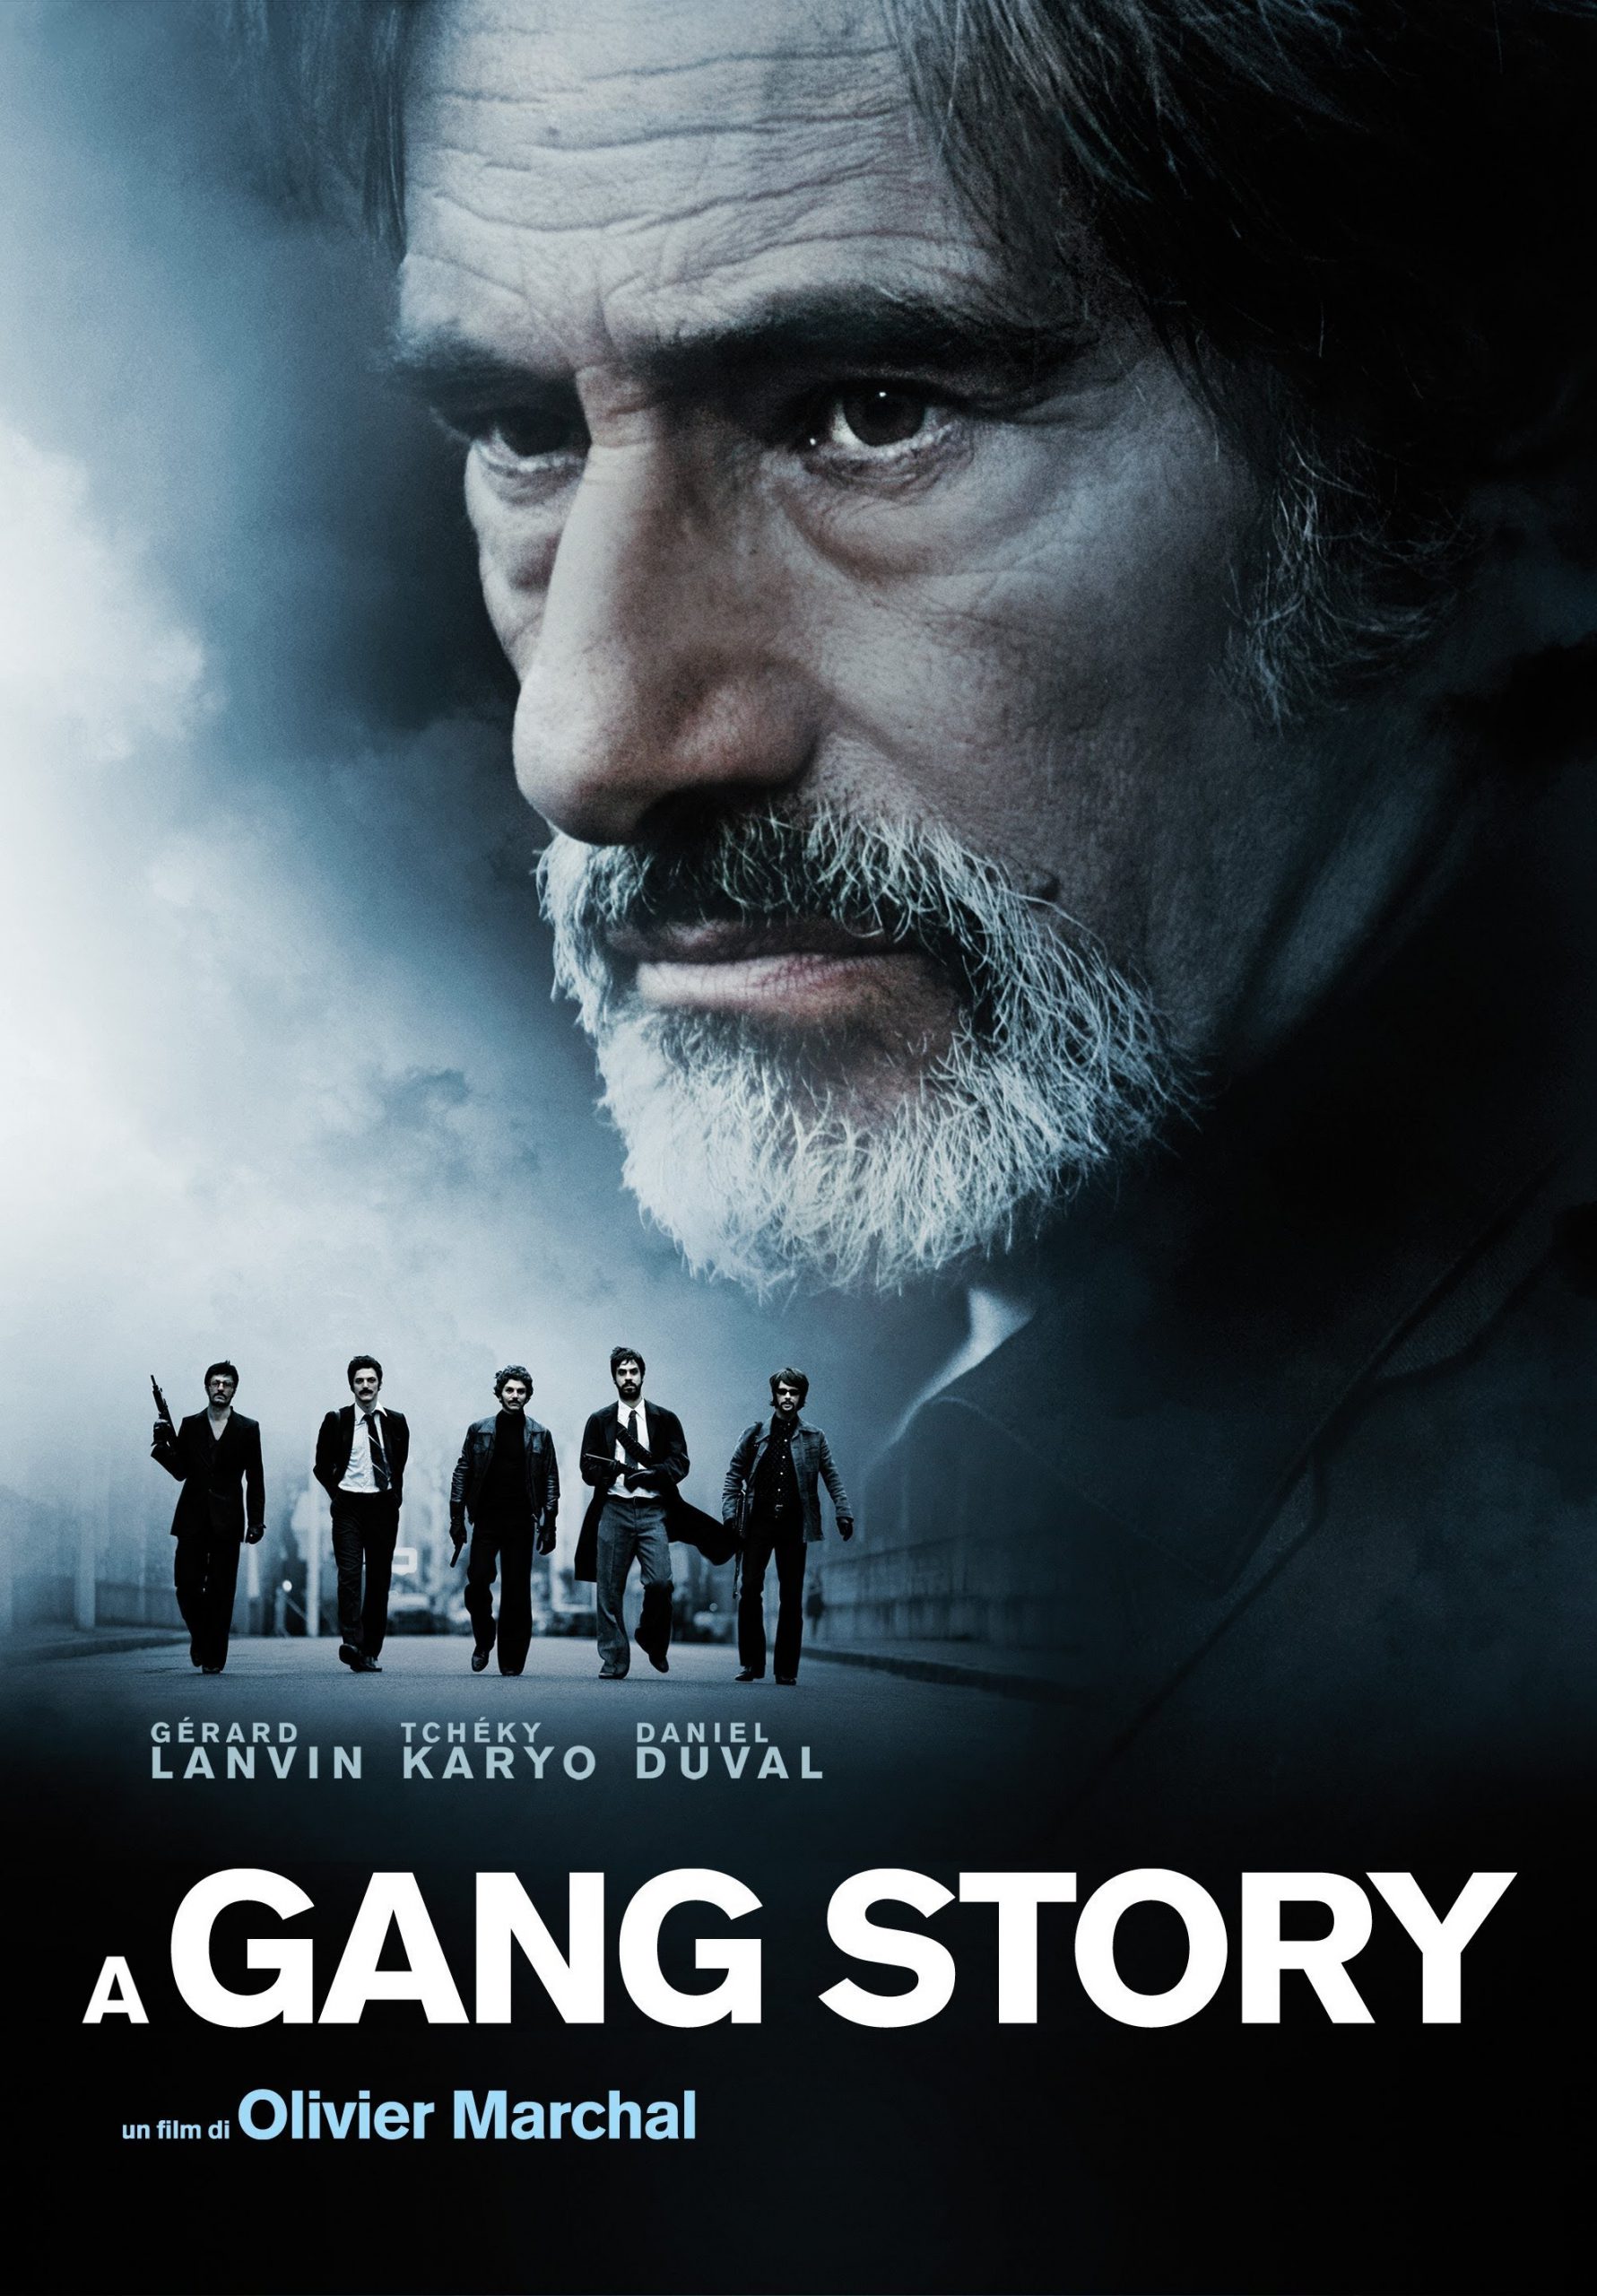 A Gang Story [HD] (2011)